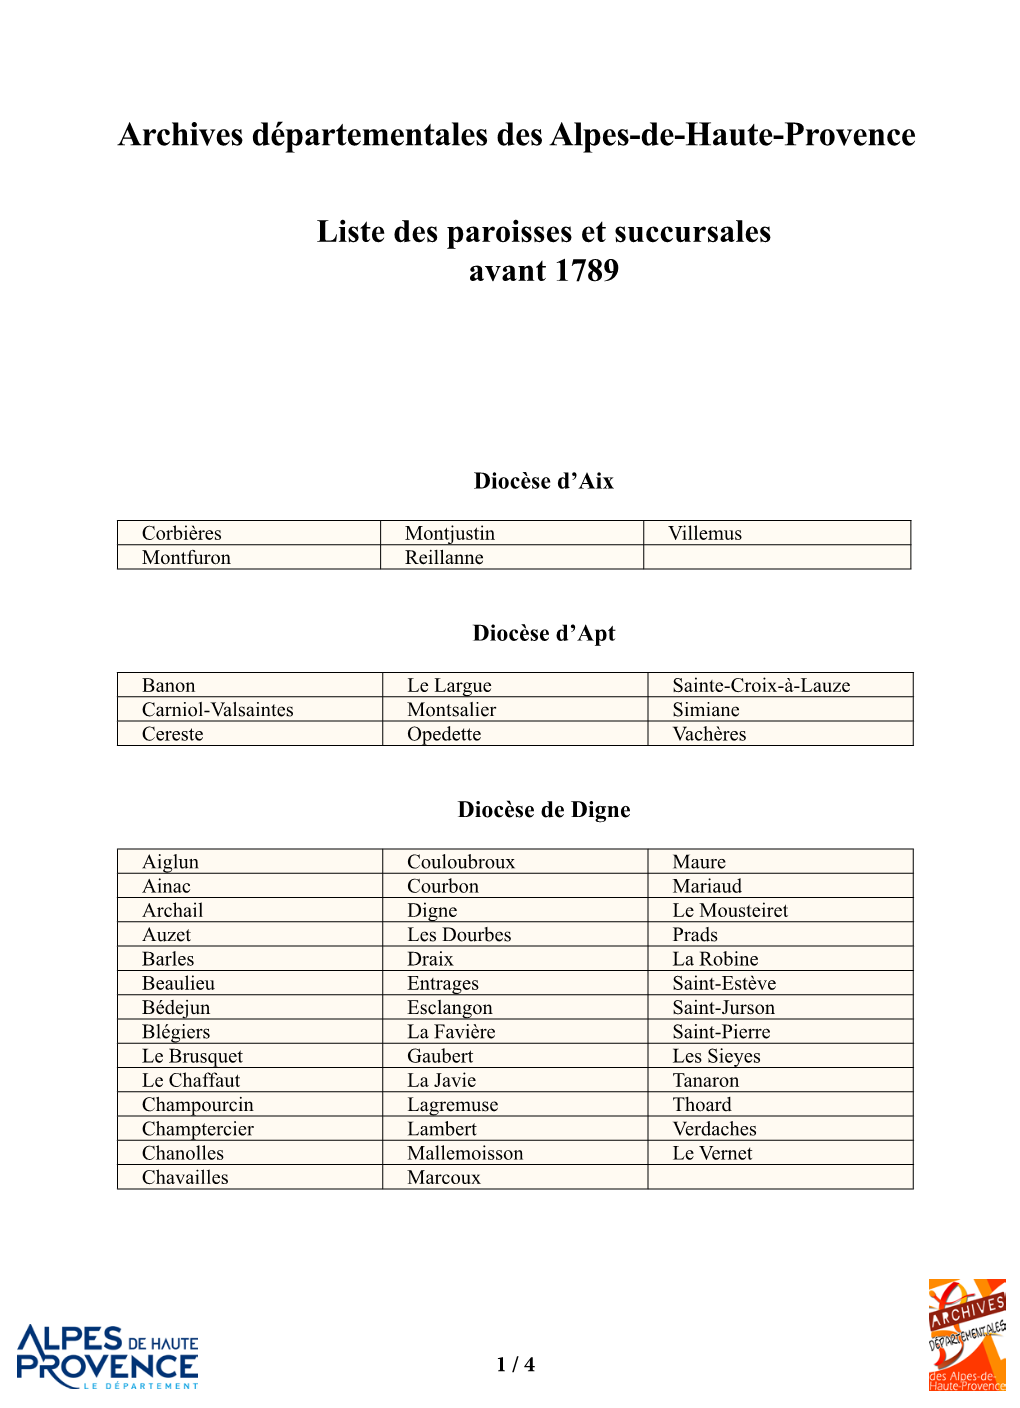 Liste Des Paroisses Et Succursales Avant 1789